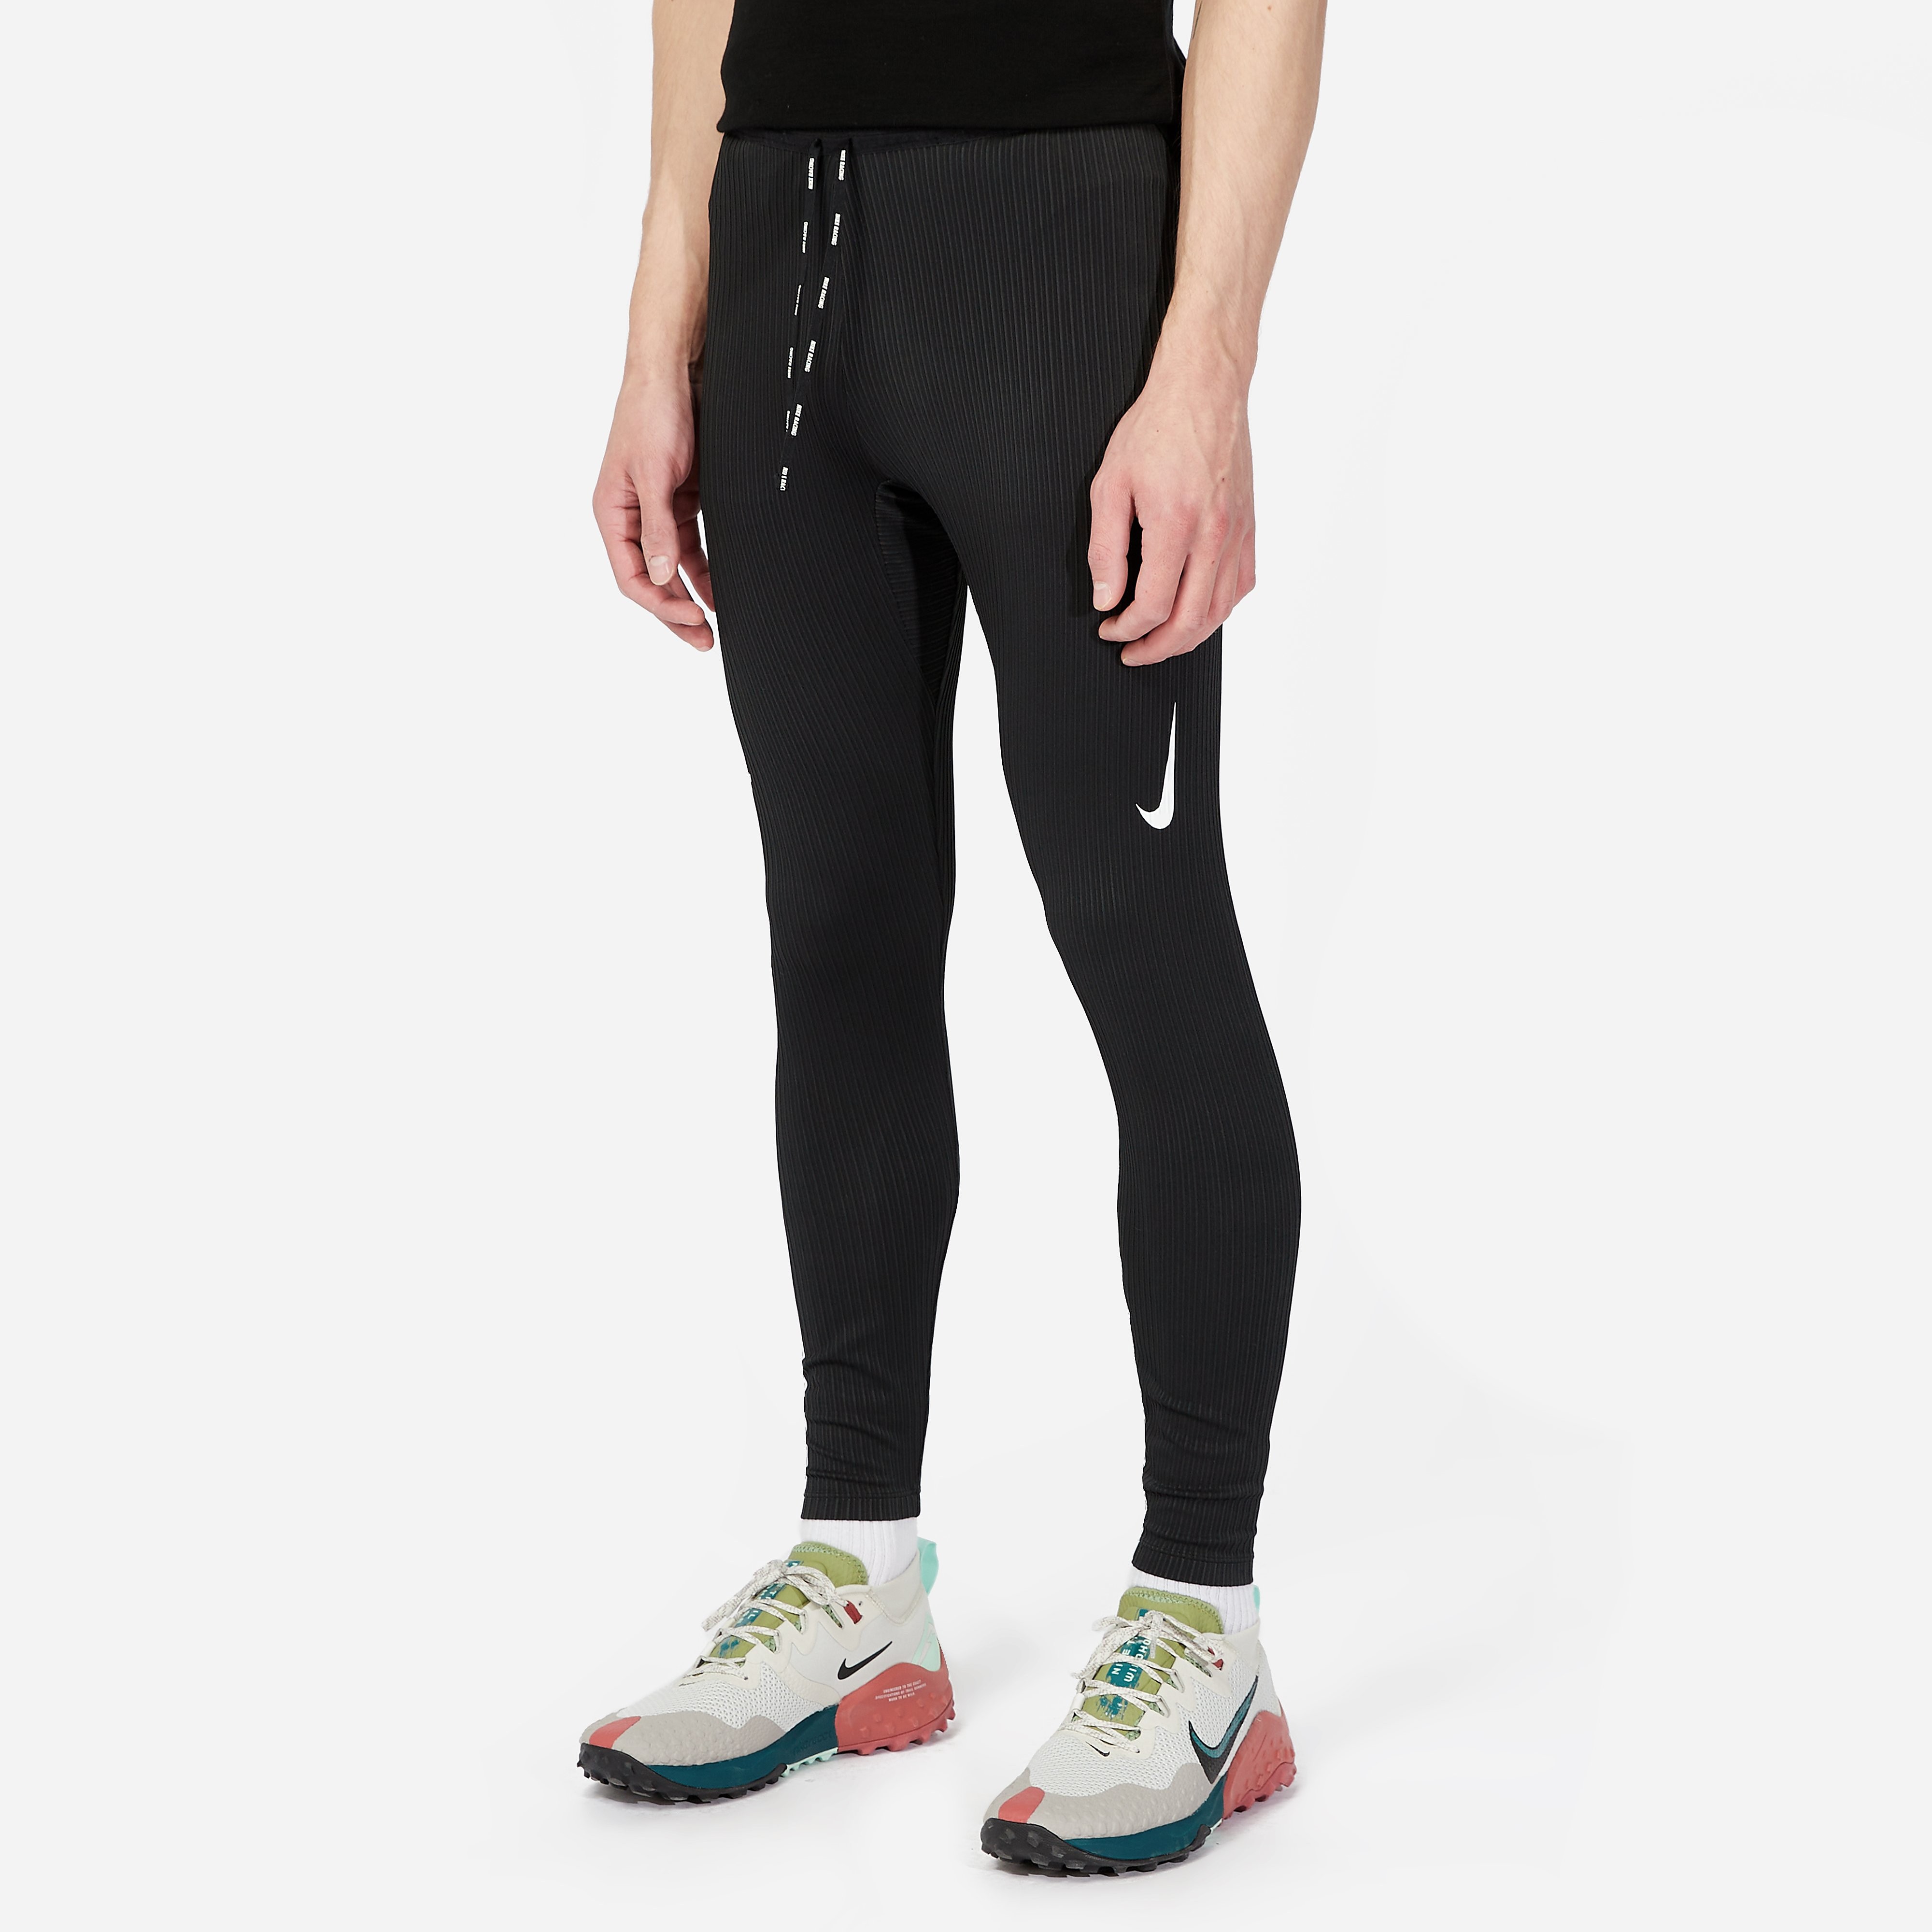 Nike Dri-FIT ADV AeroSwift Running Tight, Black